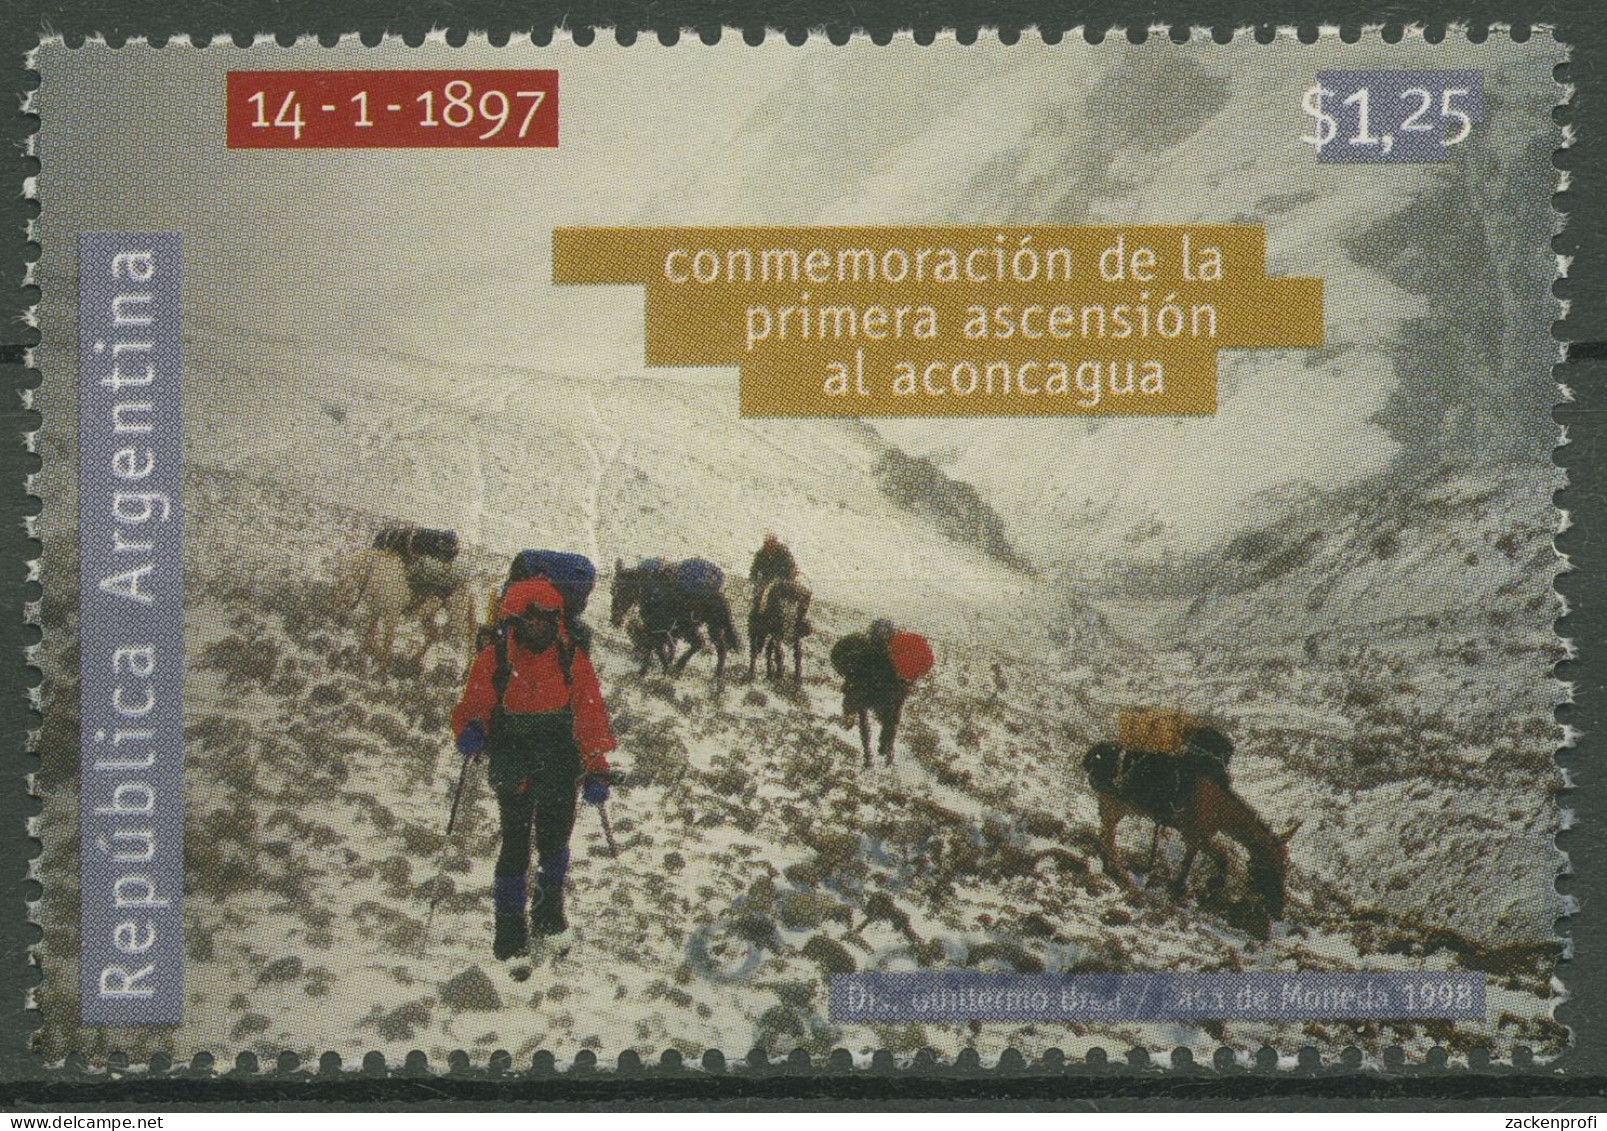 Argentinien 1998 Bergsteigen Erstbesteigung Des Aconcagua 2394 Gestempelt - Used Stamps